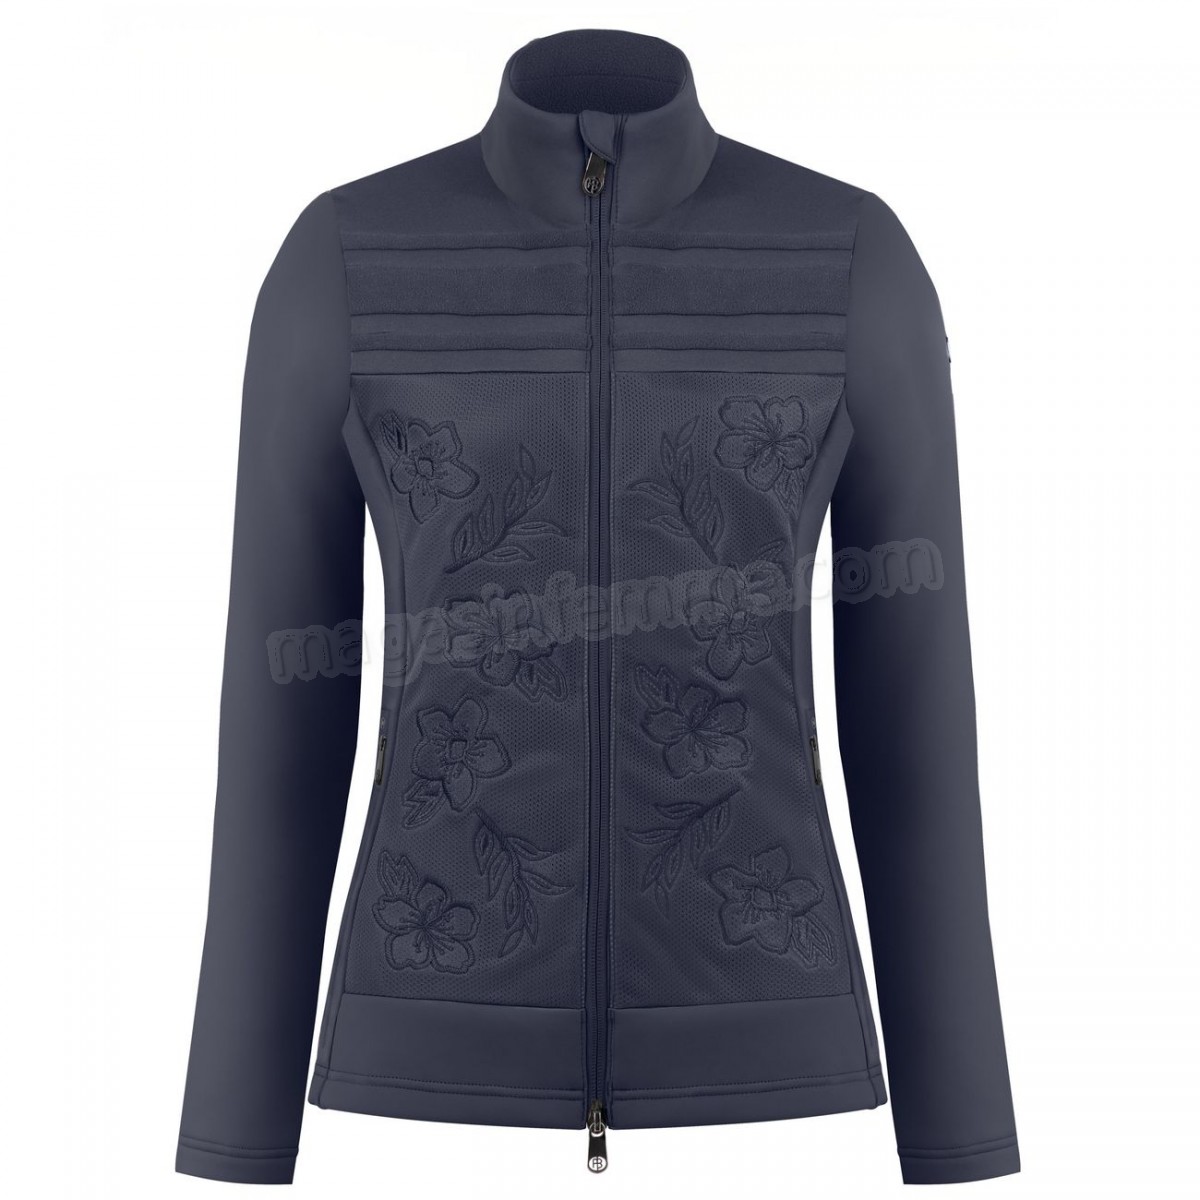 Poivre Blanc-Sports d'hiver femme POIVRE BLANC Veste Polaire Poivre Blanc Hybrid Stretch Fleece Jacket 1605 Gothic Blue 4 Femme en solde - -1